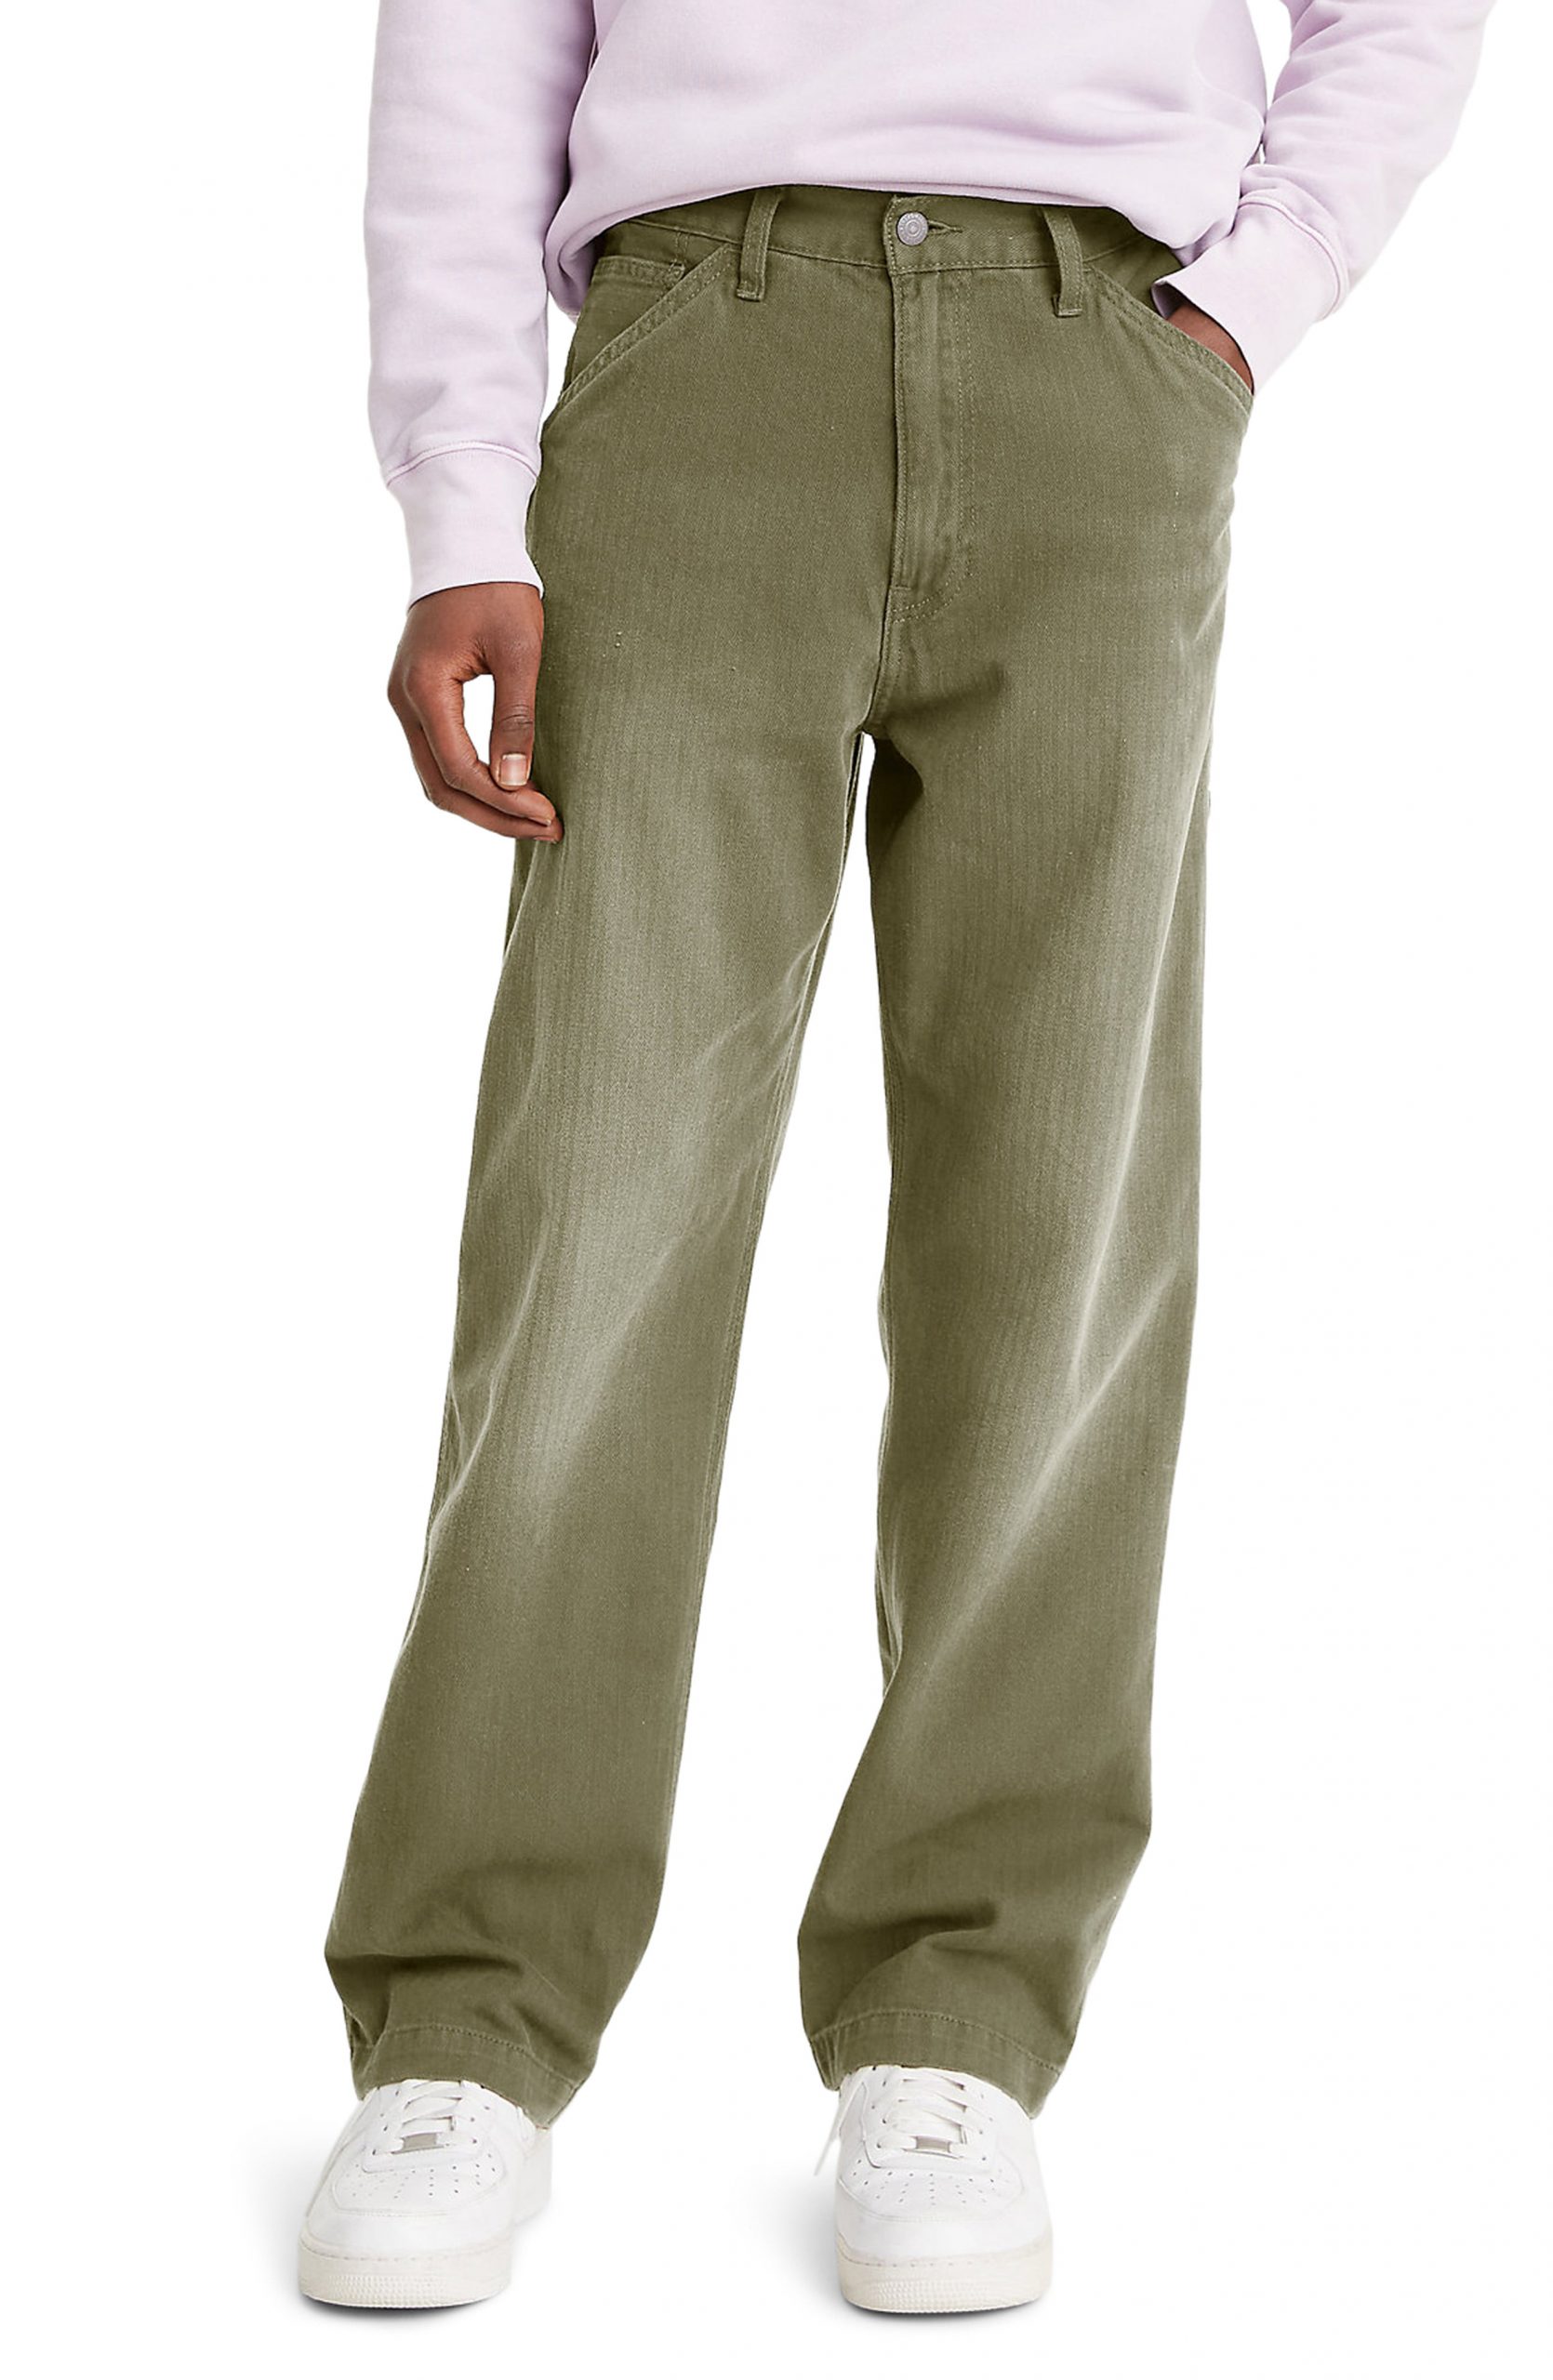 levis cotton pants